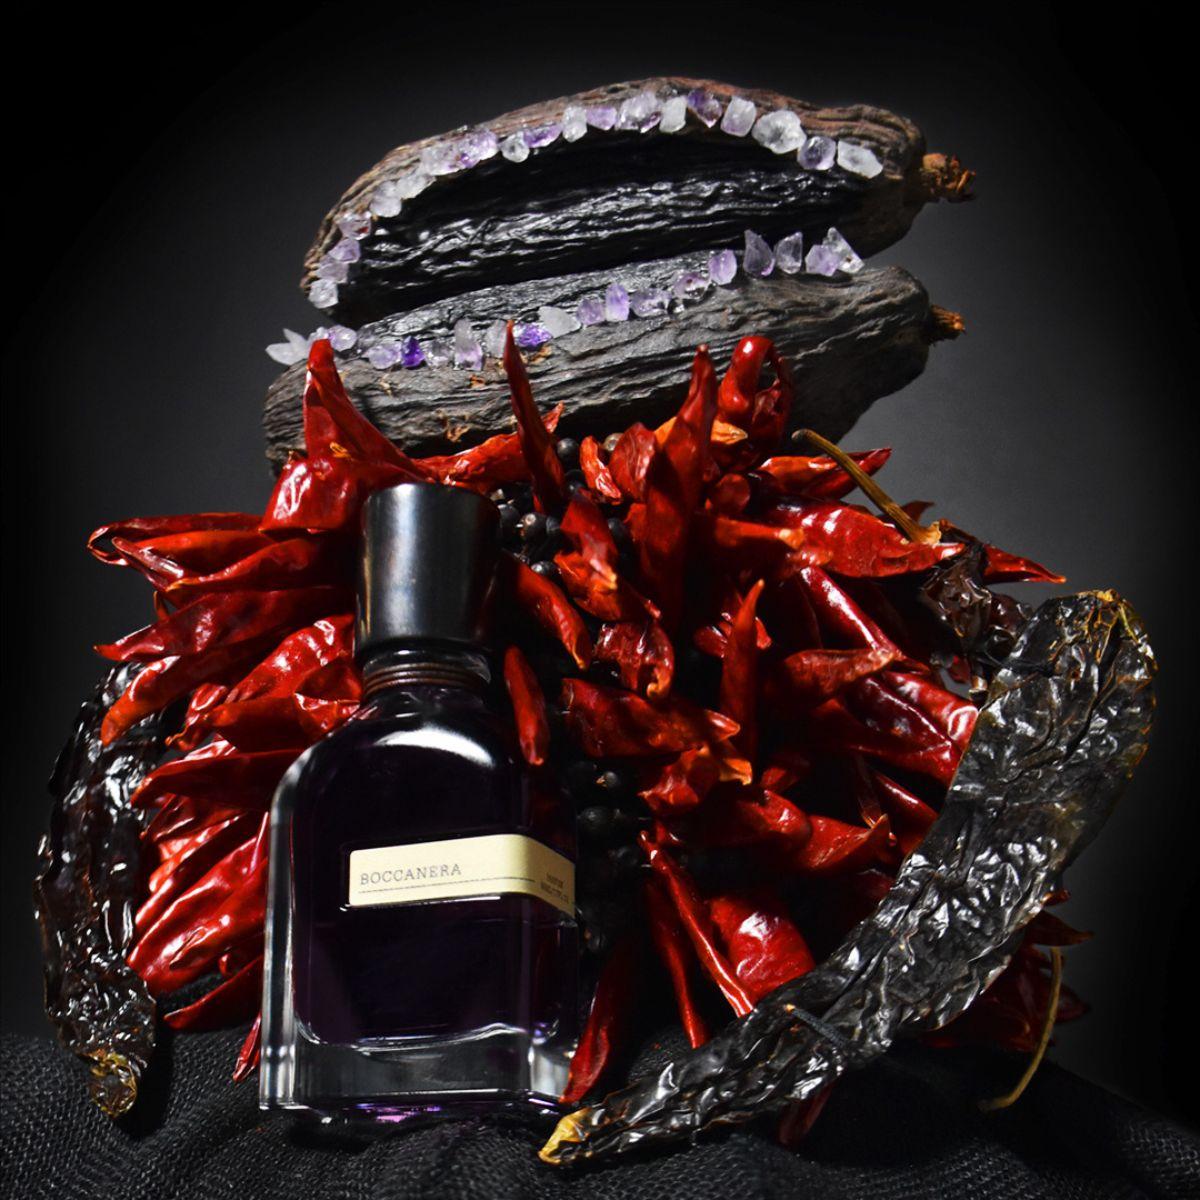 Afbeelding van Boccanera extrait de parfum 50 ml van het parfum merk Orto Parisi